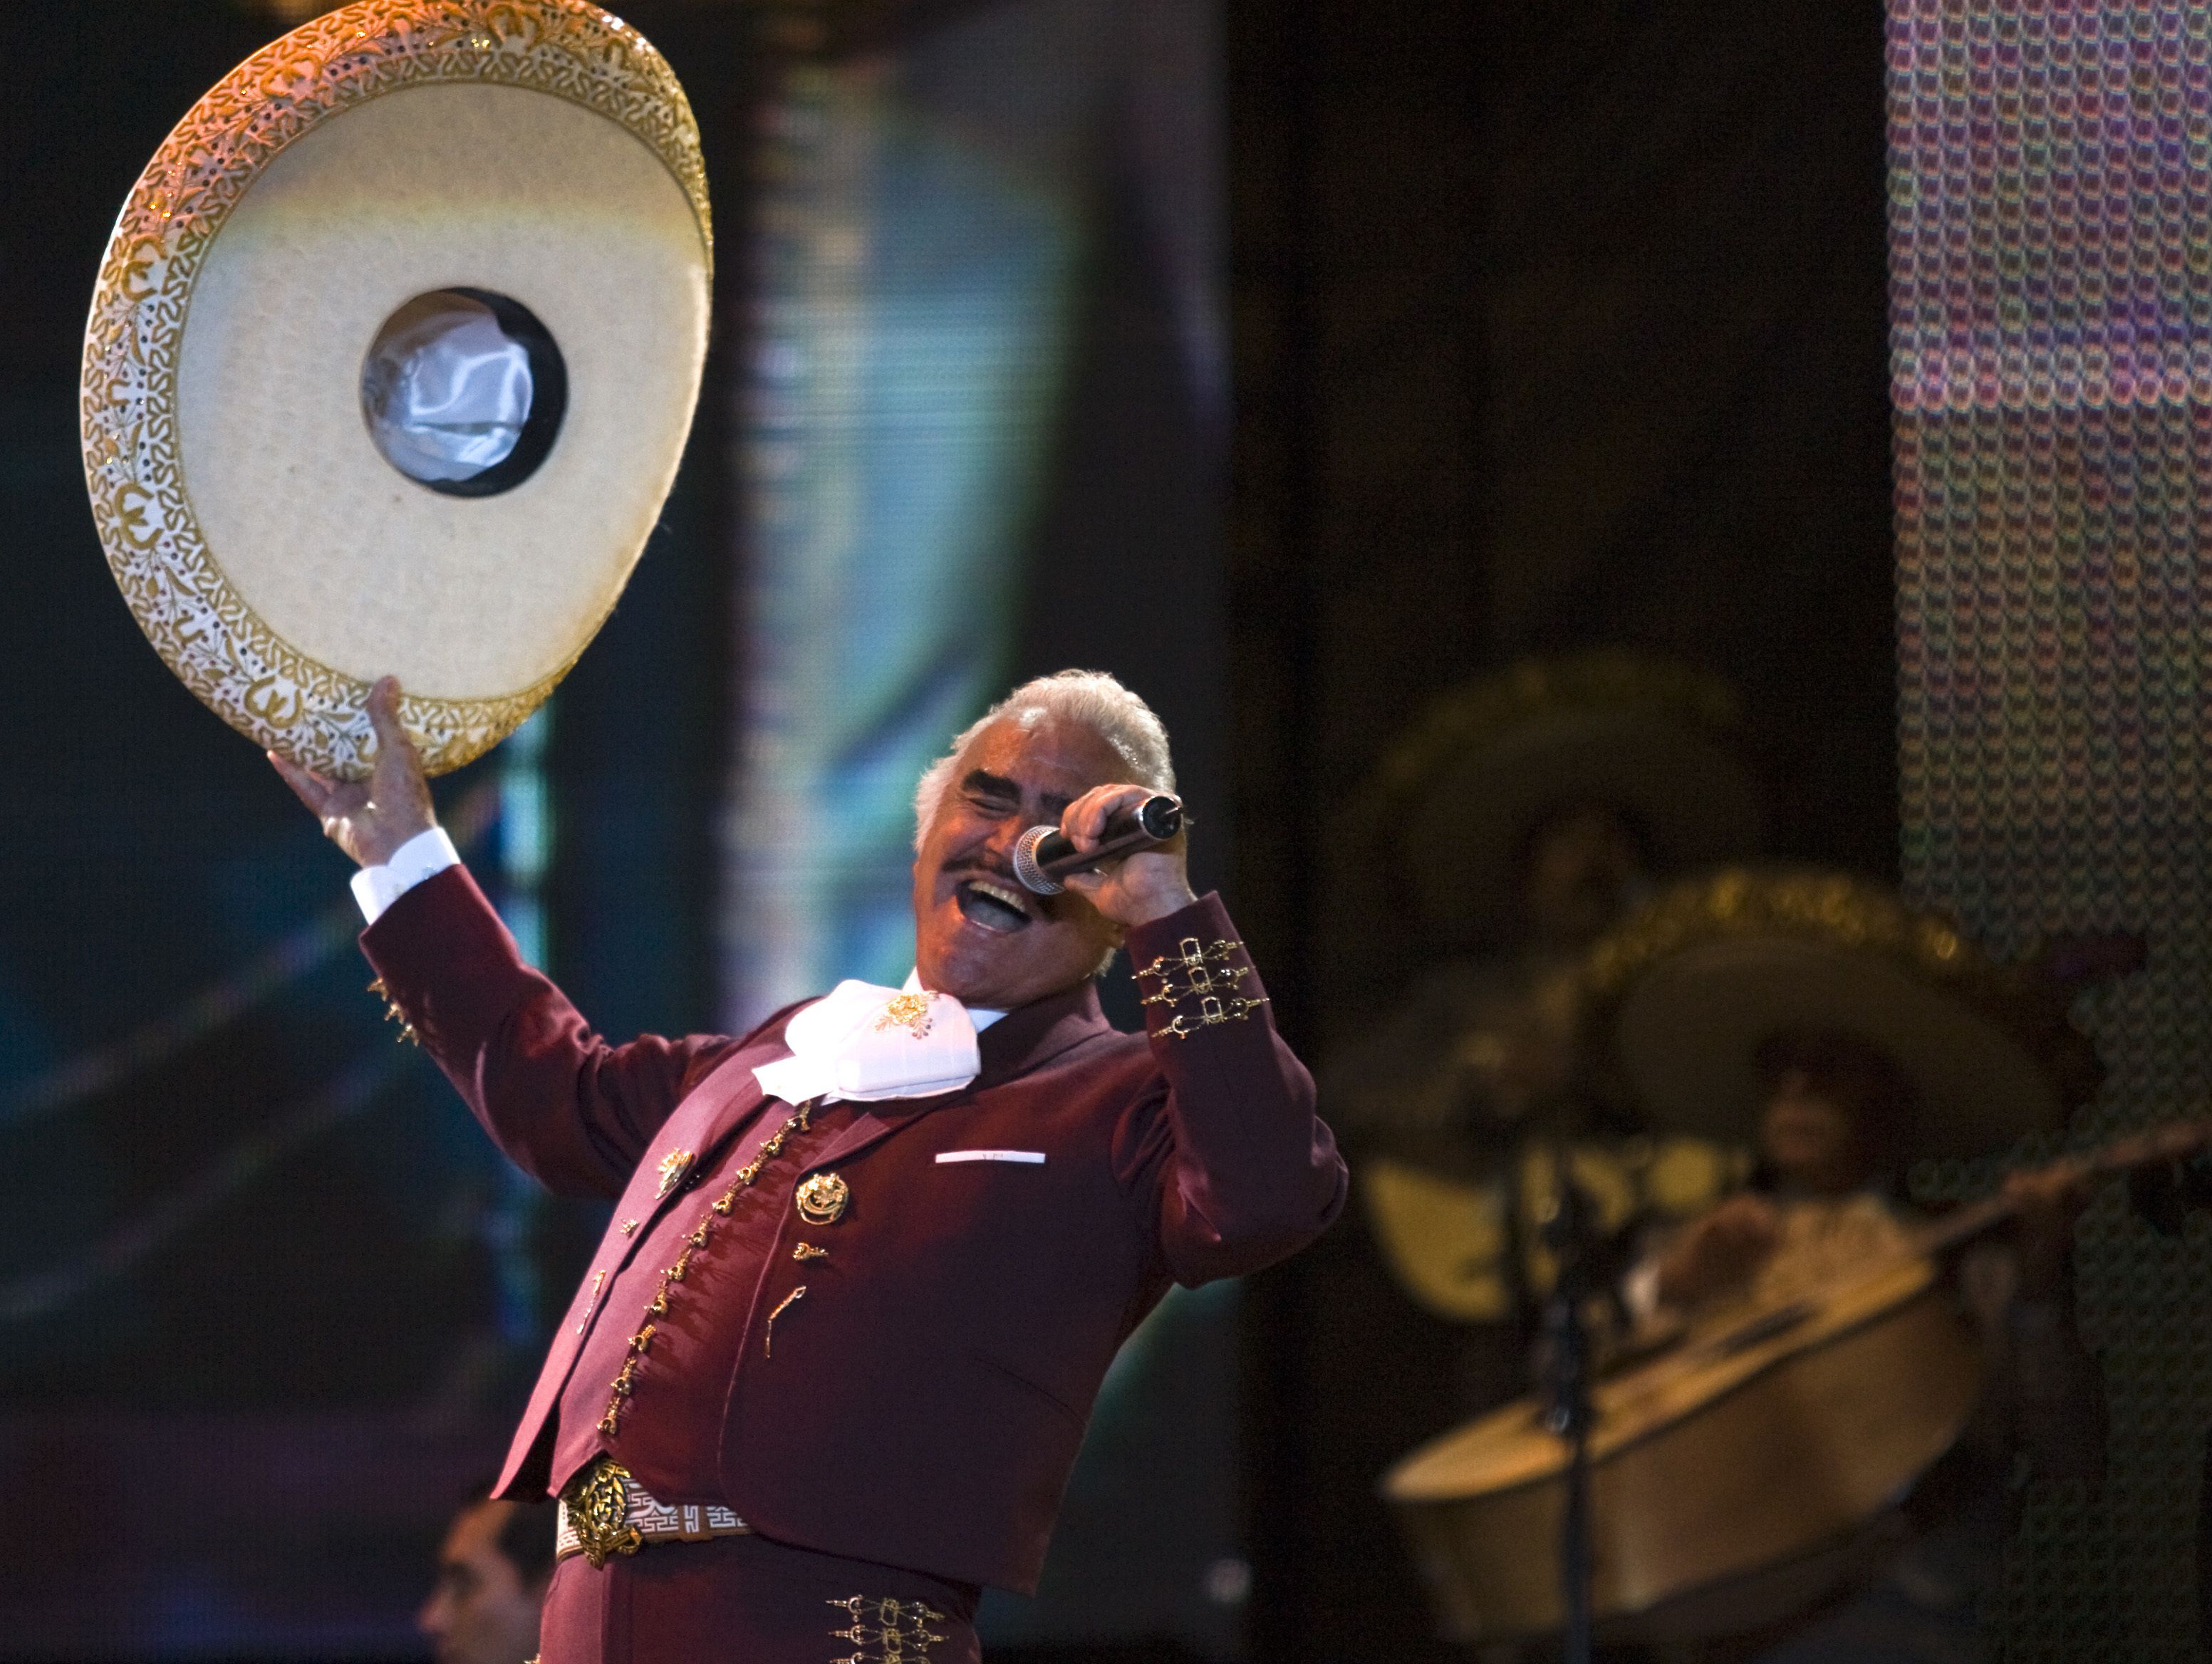 ARCHIVO- Vicente Fernández interpreta un concierto gratis durante el día de San Valentín en el Zócalo de la Ciudad de México el 14 de febrero de 2009. Fernández falleció a los 81 años en México, anunció su familia en un comunicado el 12 de diciembre de 2021. (Foto AP/Claudio Cruz, archivo)